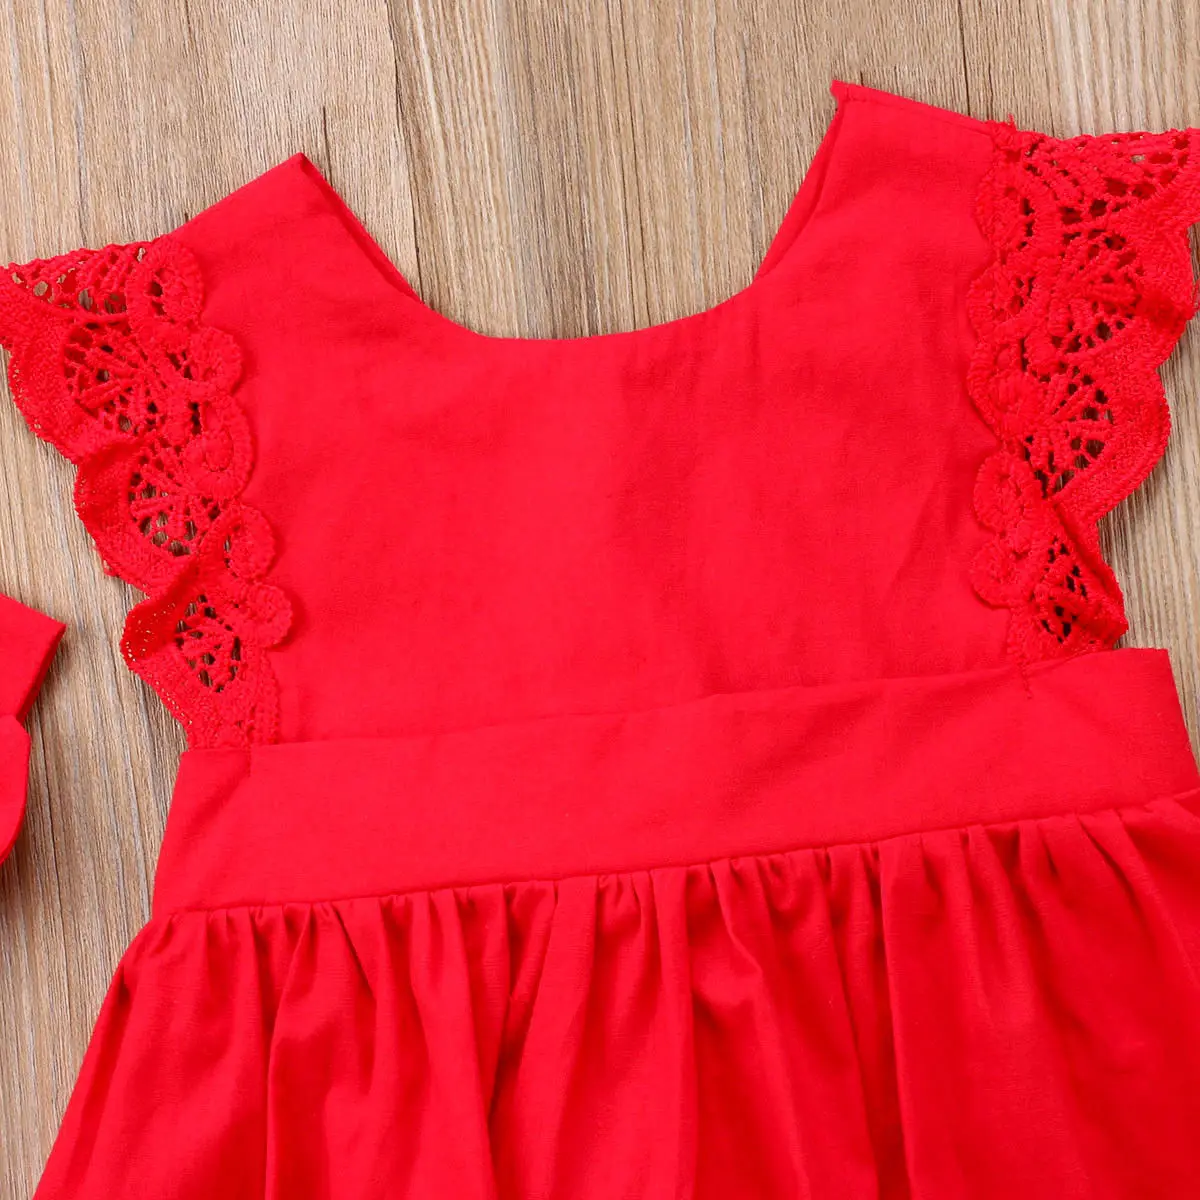 2019 חדש 2Pcs חג המולד תינוק תינוק תינוק שרק נולד בנות רומפר השמלה, החליפה תלבושות טוטו להלביש+בגימור אדום ערכות מתנה - 1